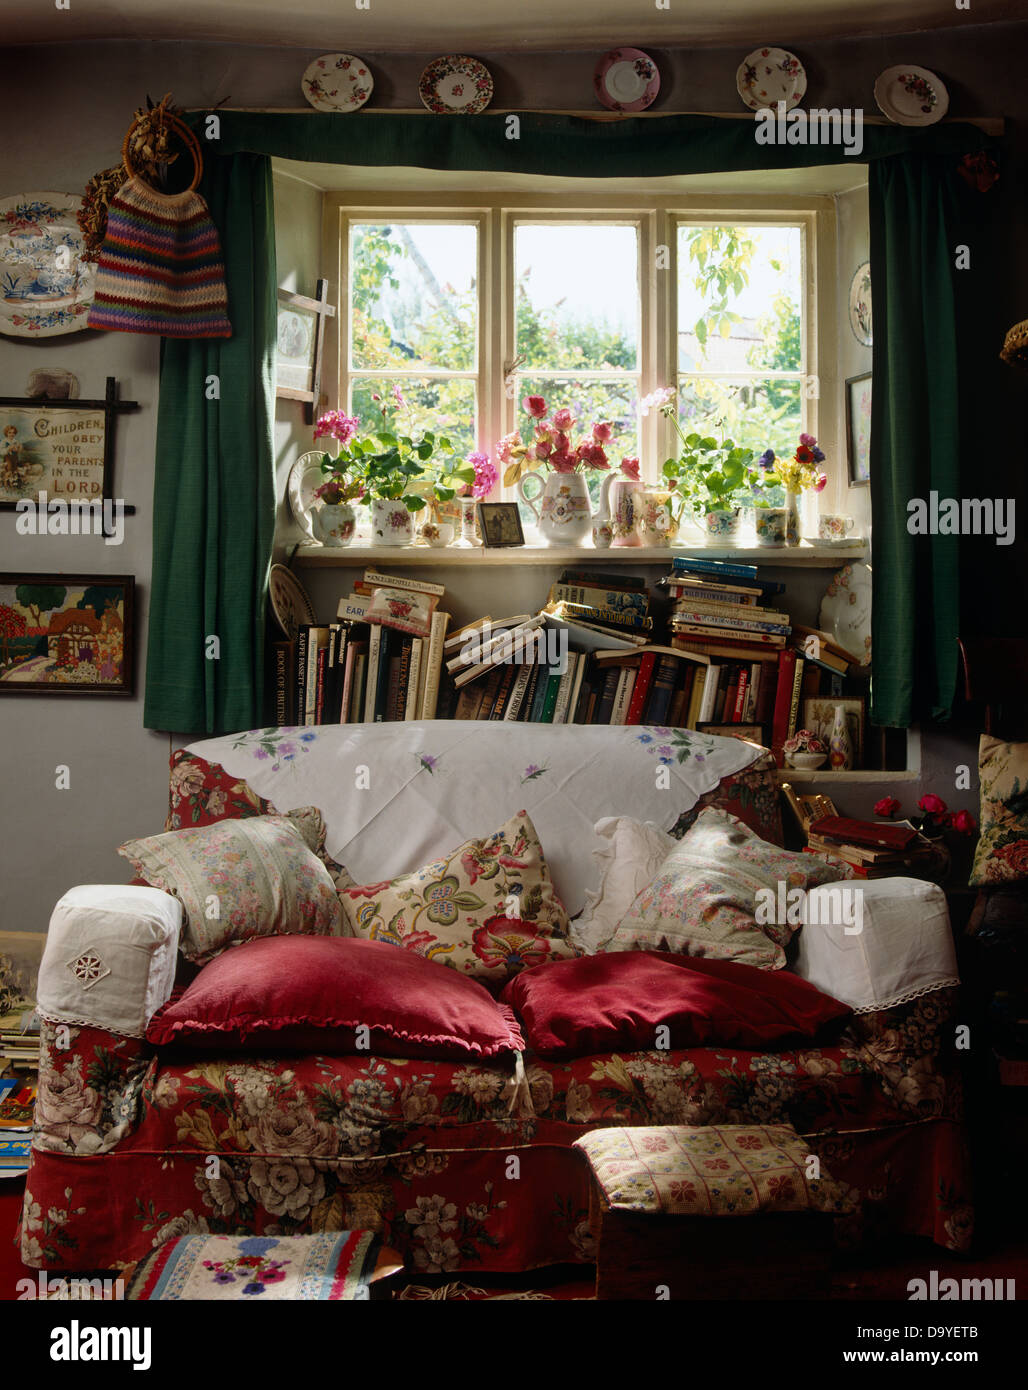 Antimacassars bianco e cuscini rossi sul divano floreale in cottage ingombra la stanza di seduta con la pila di libri disordinata finestra sottostante Foto Stock